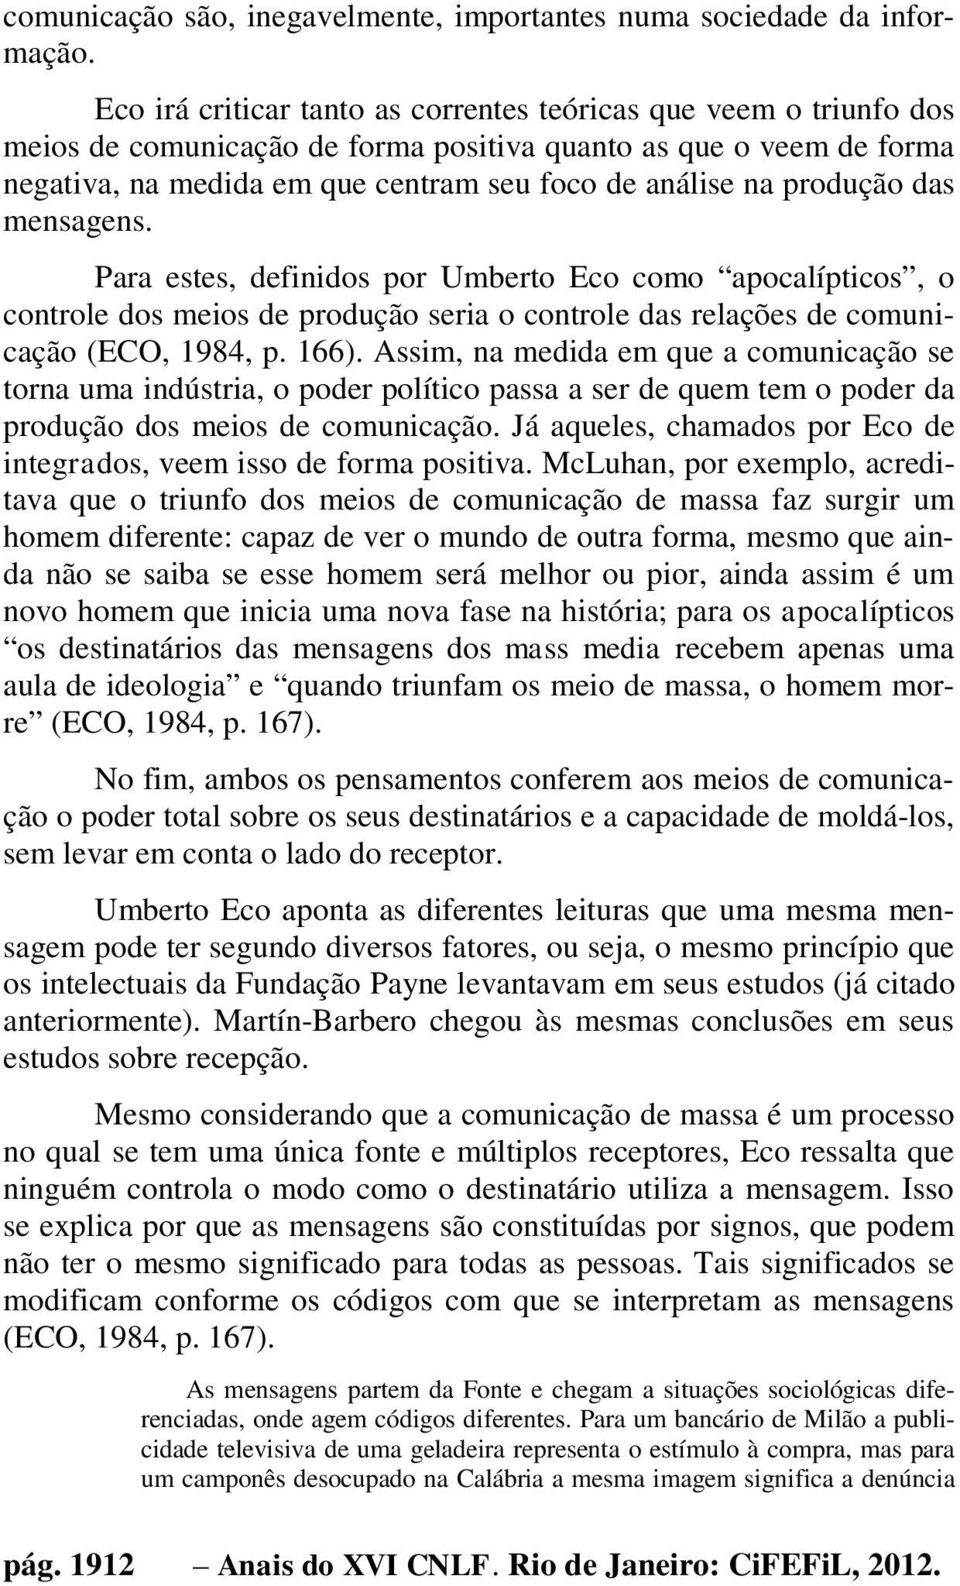 produção das mensagens. Para estes, definidos por Umberto Eco como apocalípticos, o controle dos meios de produção seria o controle das relações de comunicação (ECO, 1984, p. 166).